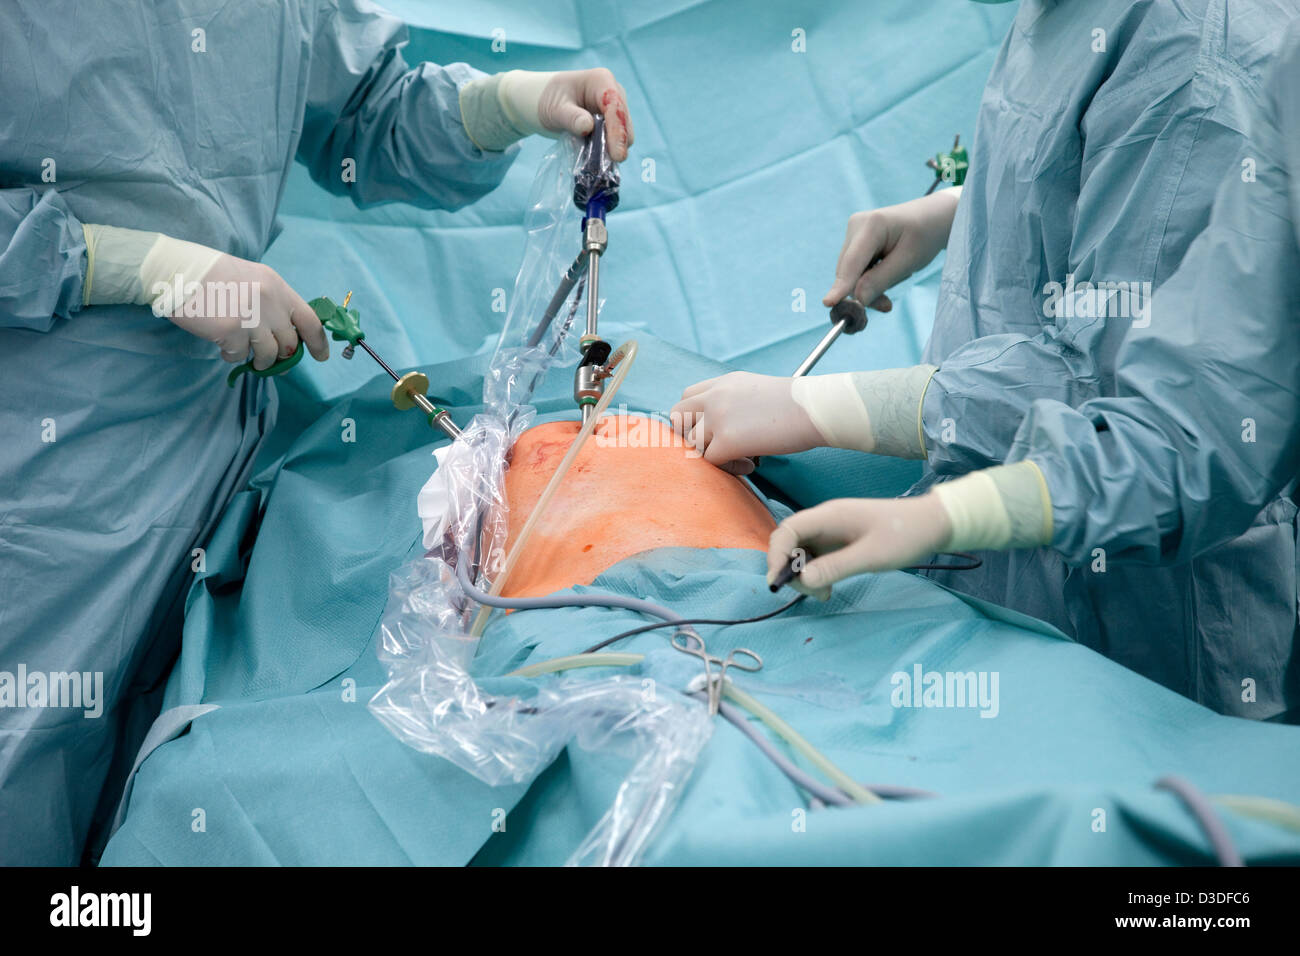 Deutschland, Krankenhaus, minimal-invasive Chirurgie in der Bauchhöhle Stockfoto